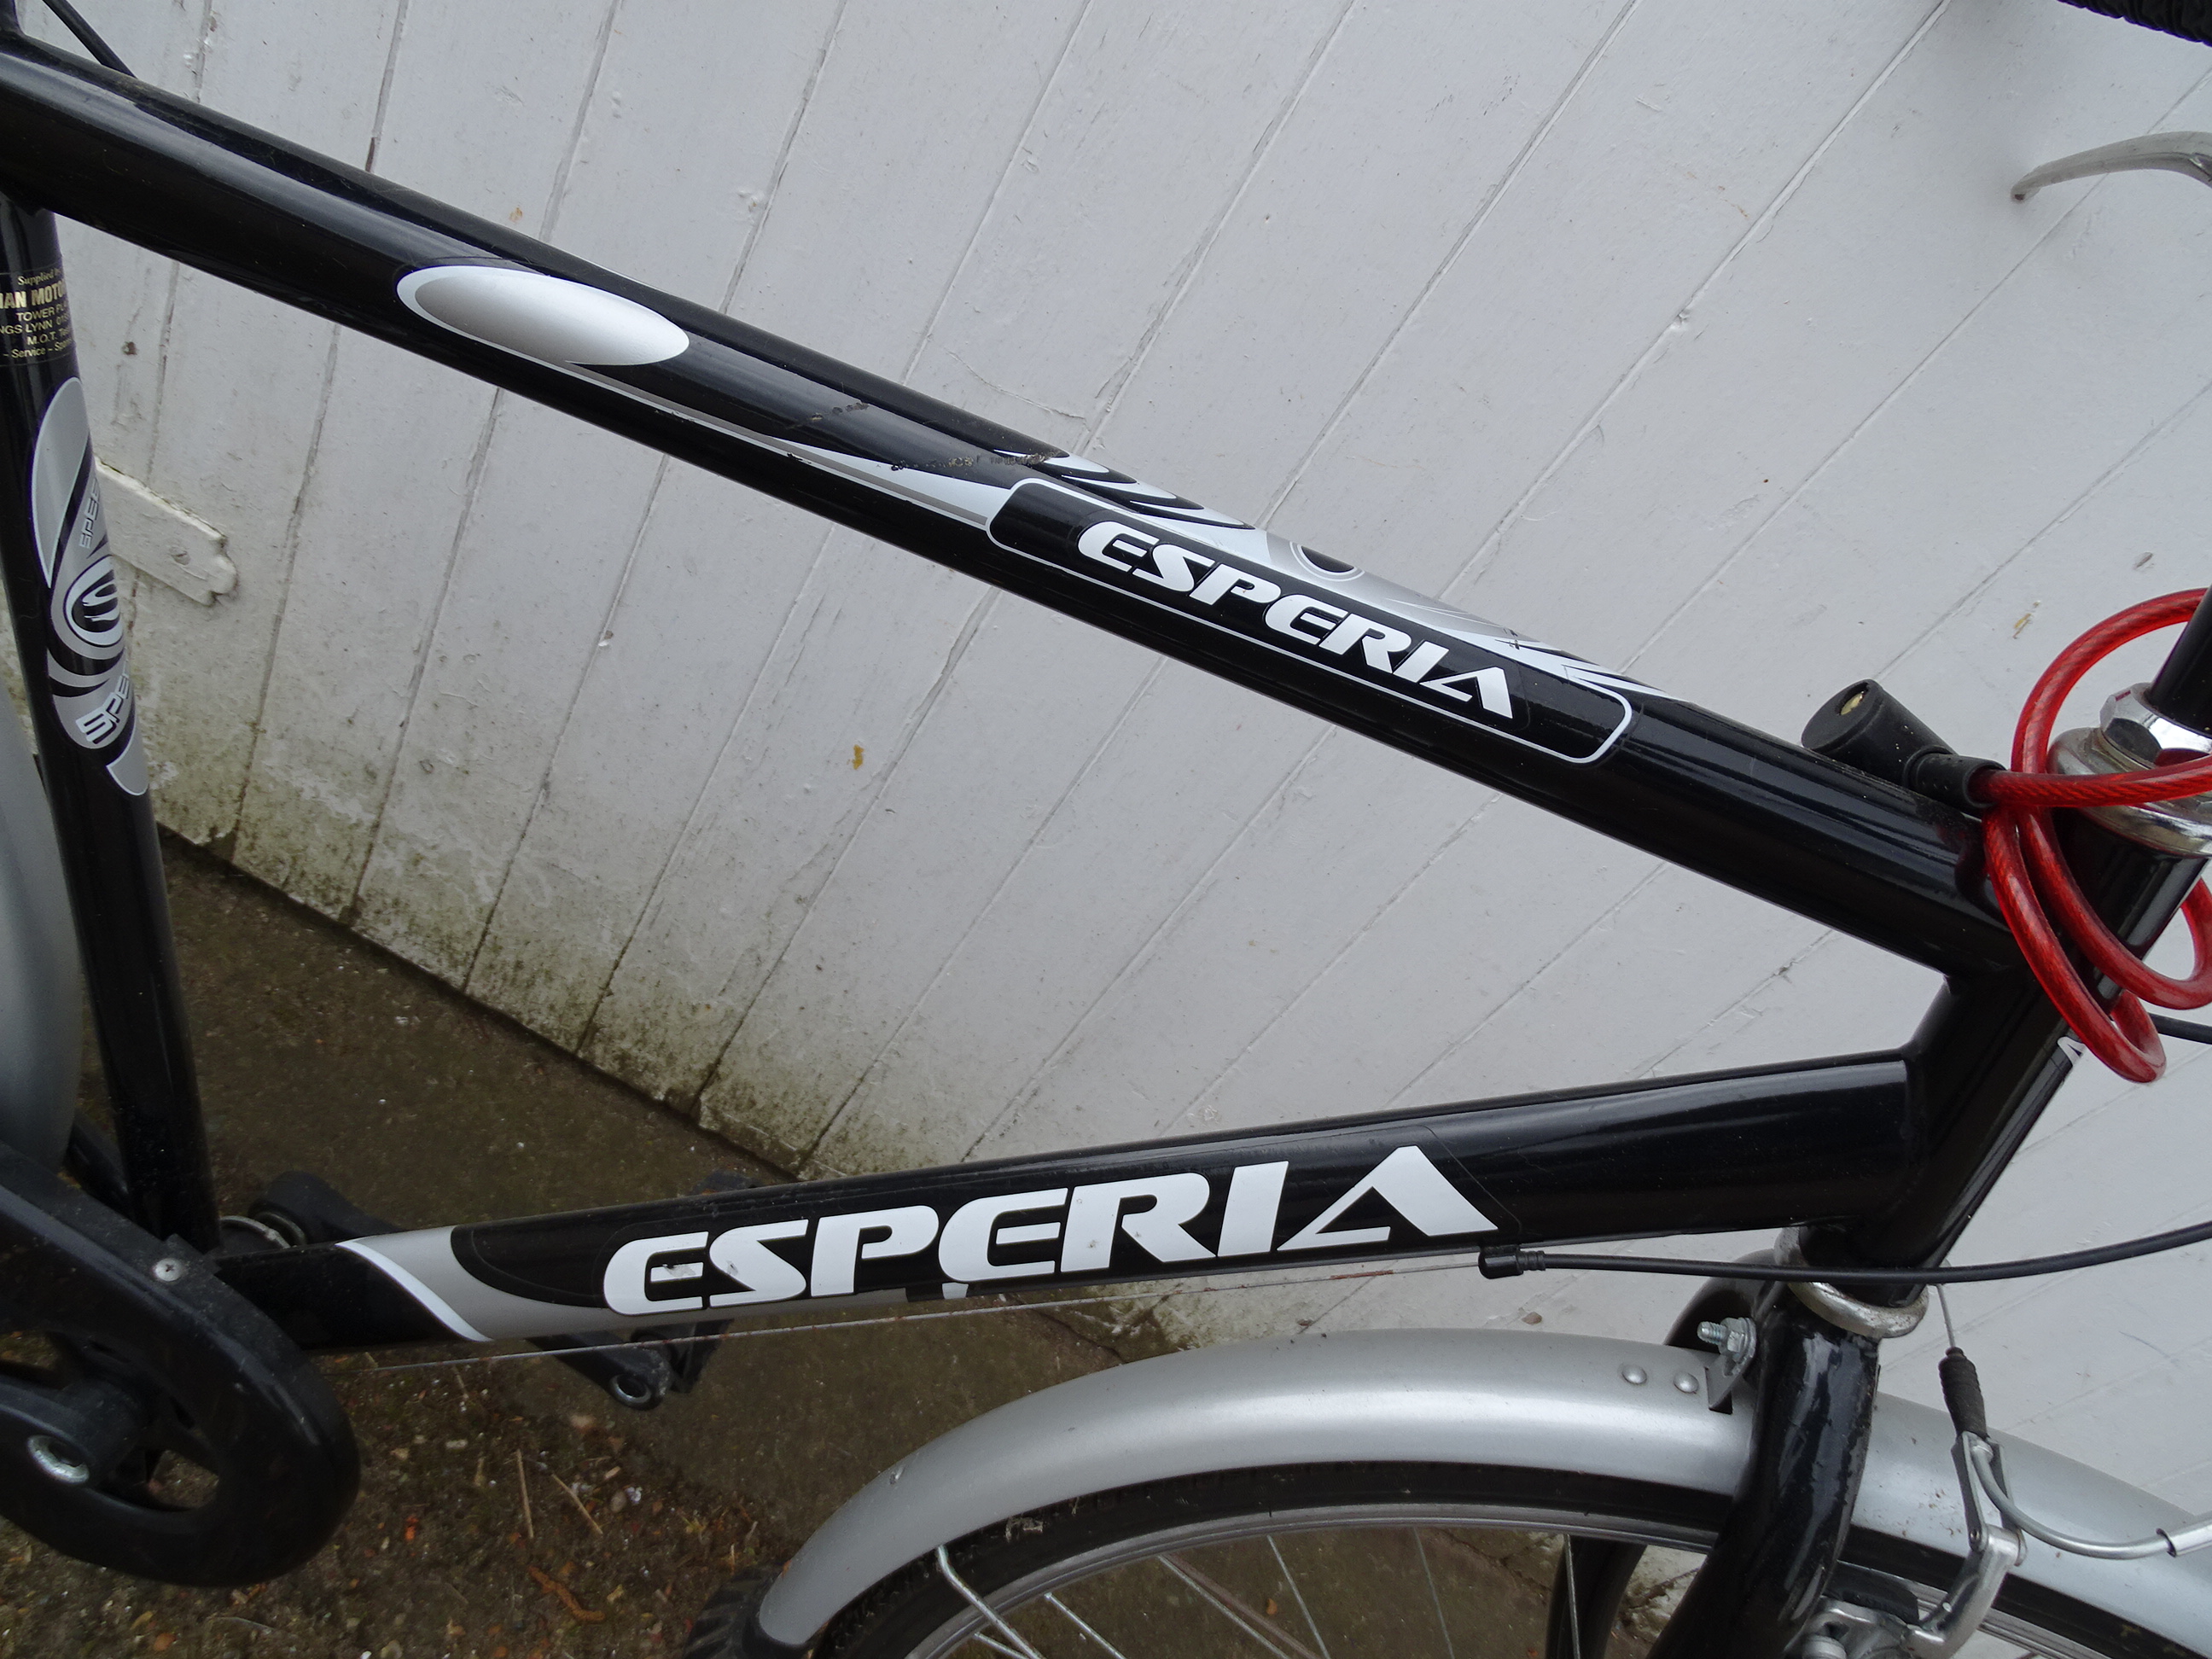 Esperia men's mountain bike - Image 2 of 2